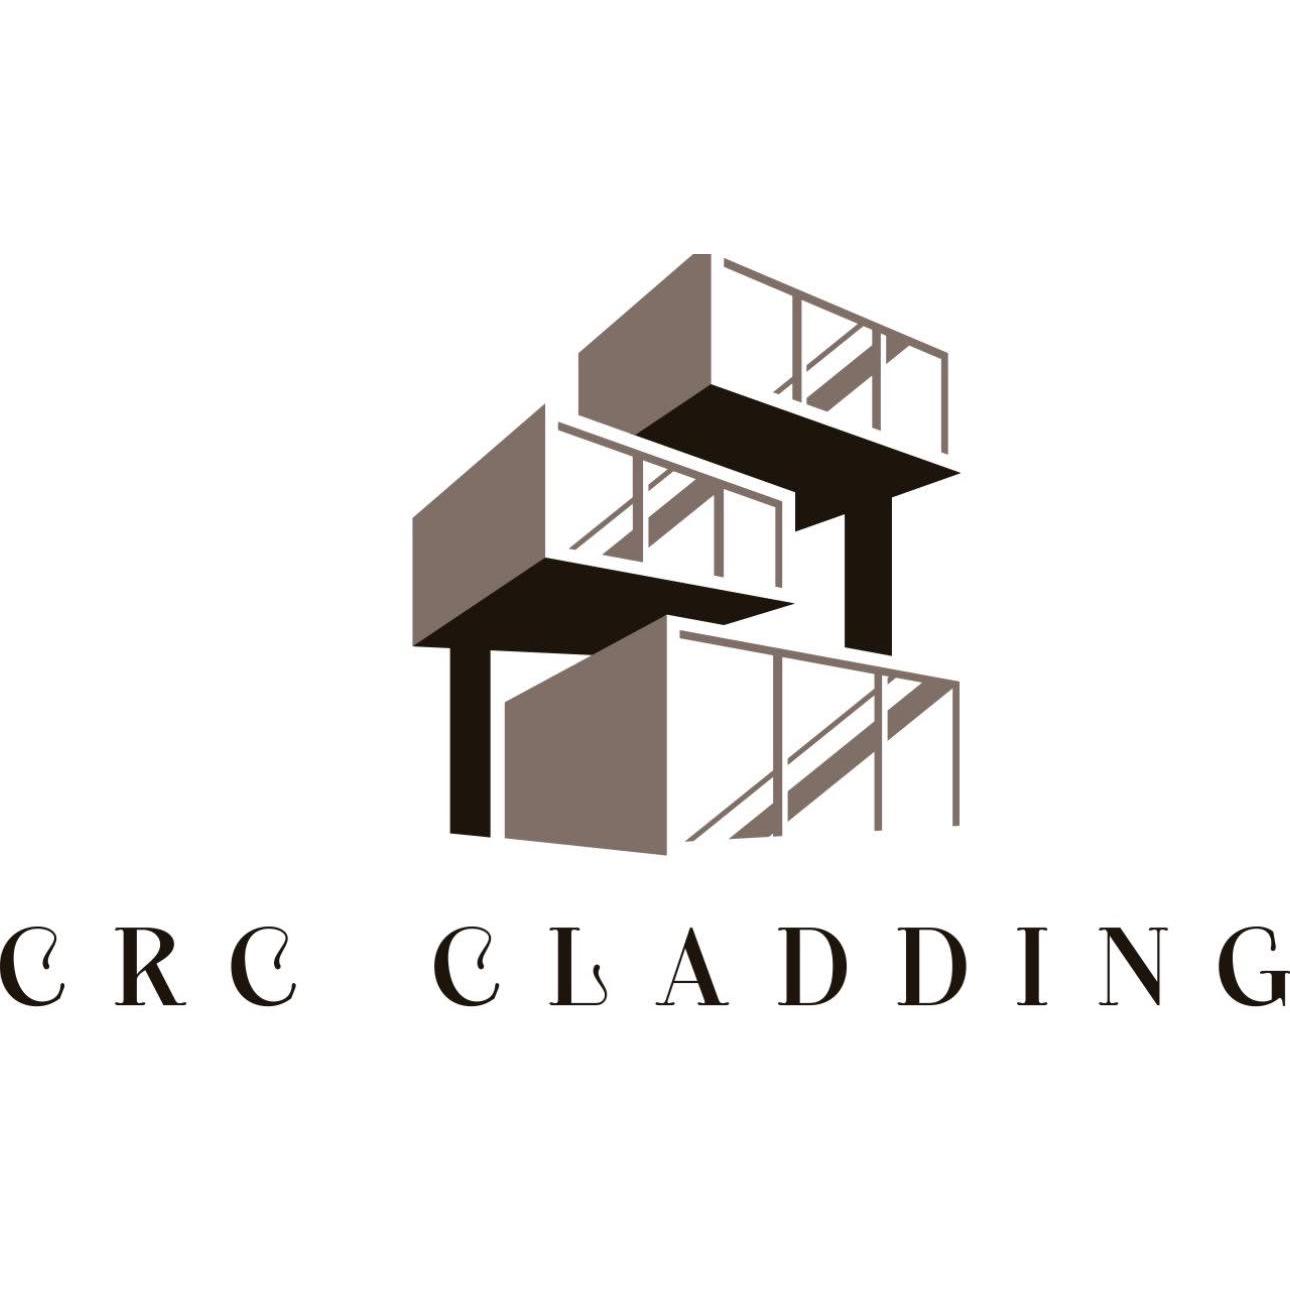 LOGO CRC Cladding Ltd Portsmouth 07359 357615